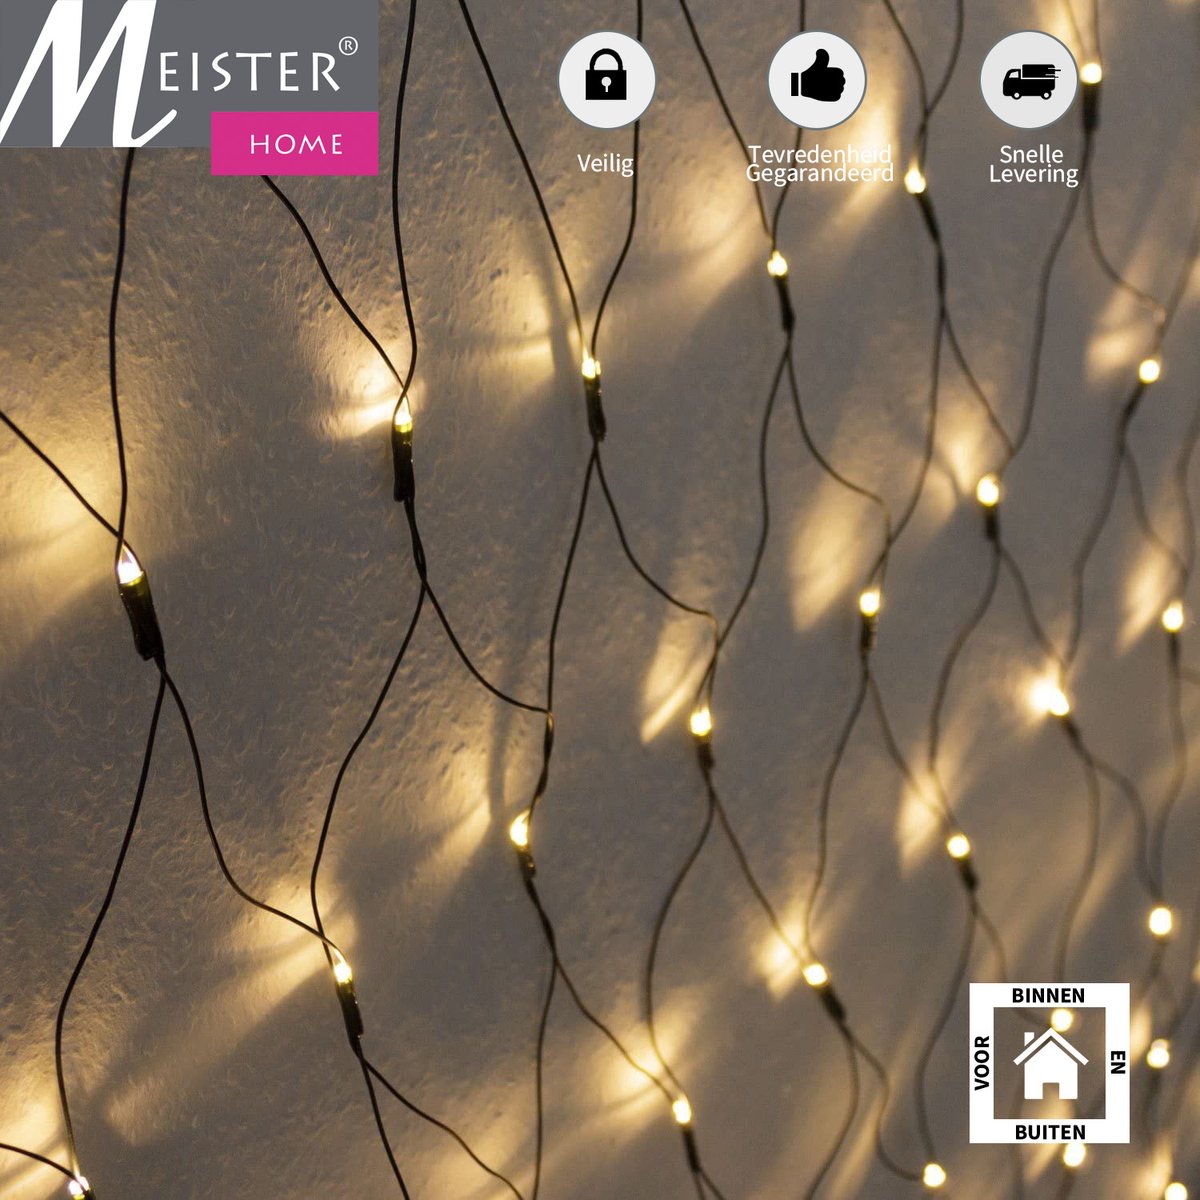 Meisterhome Netverlichting - 3x3 meter - Warm wit - Voor binnen & buiten - 240 LEDs - Meisterhome